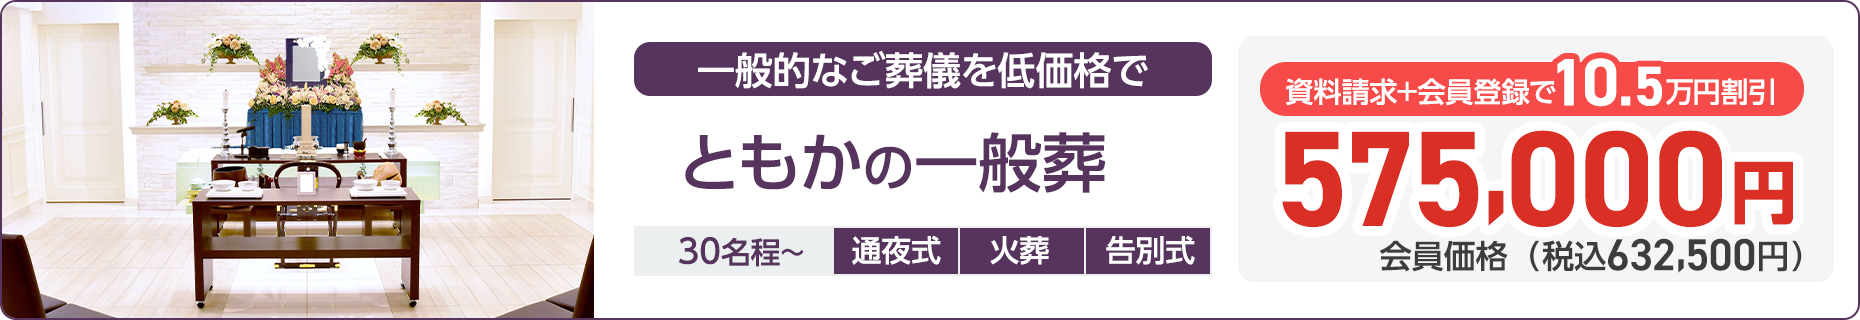 石川県での家族葬ならセットプランが最安9.9万円(税込)のともか 一般葬プラン